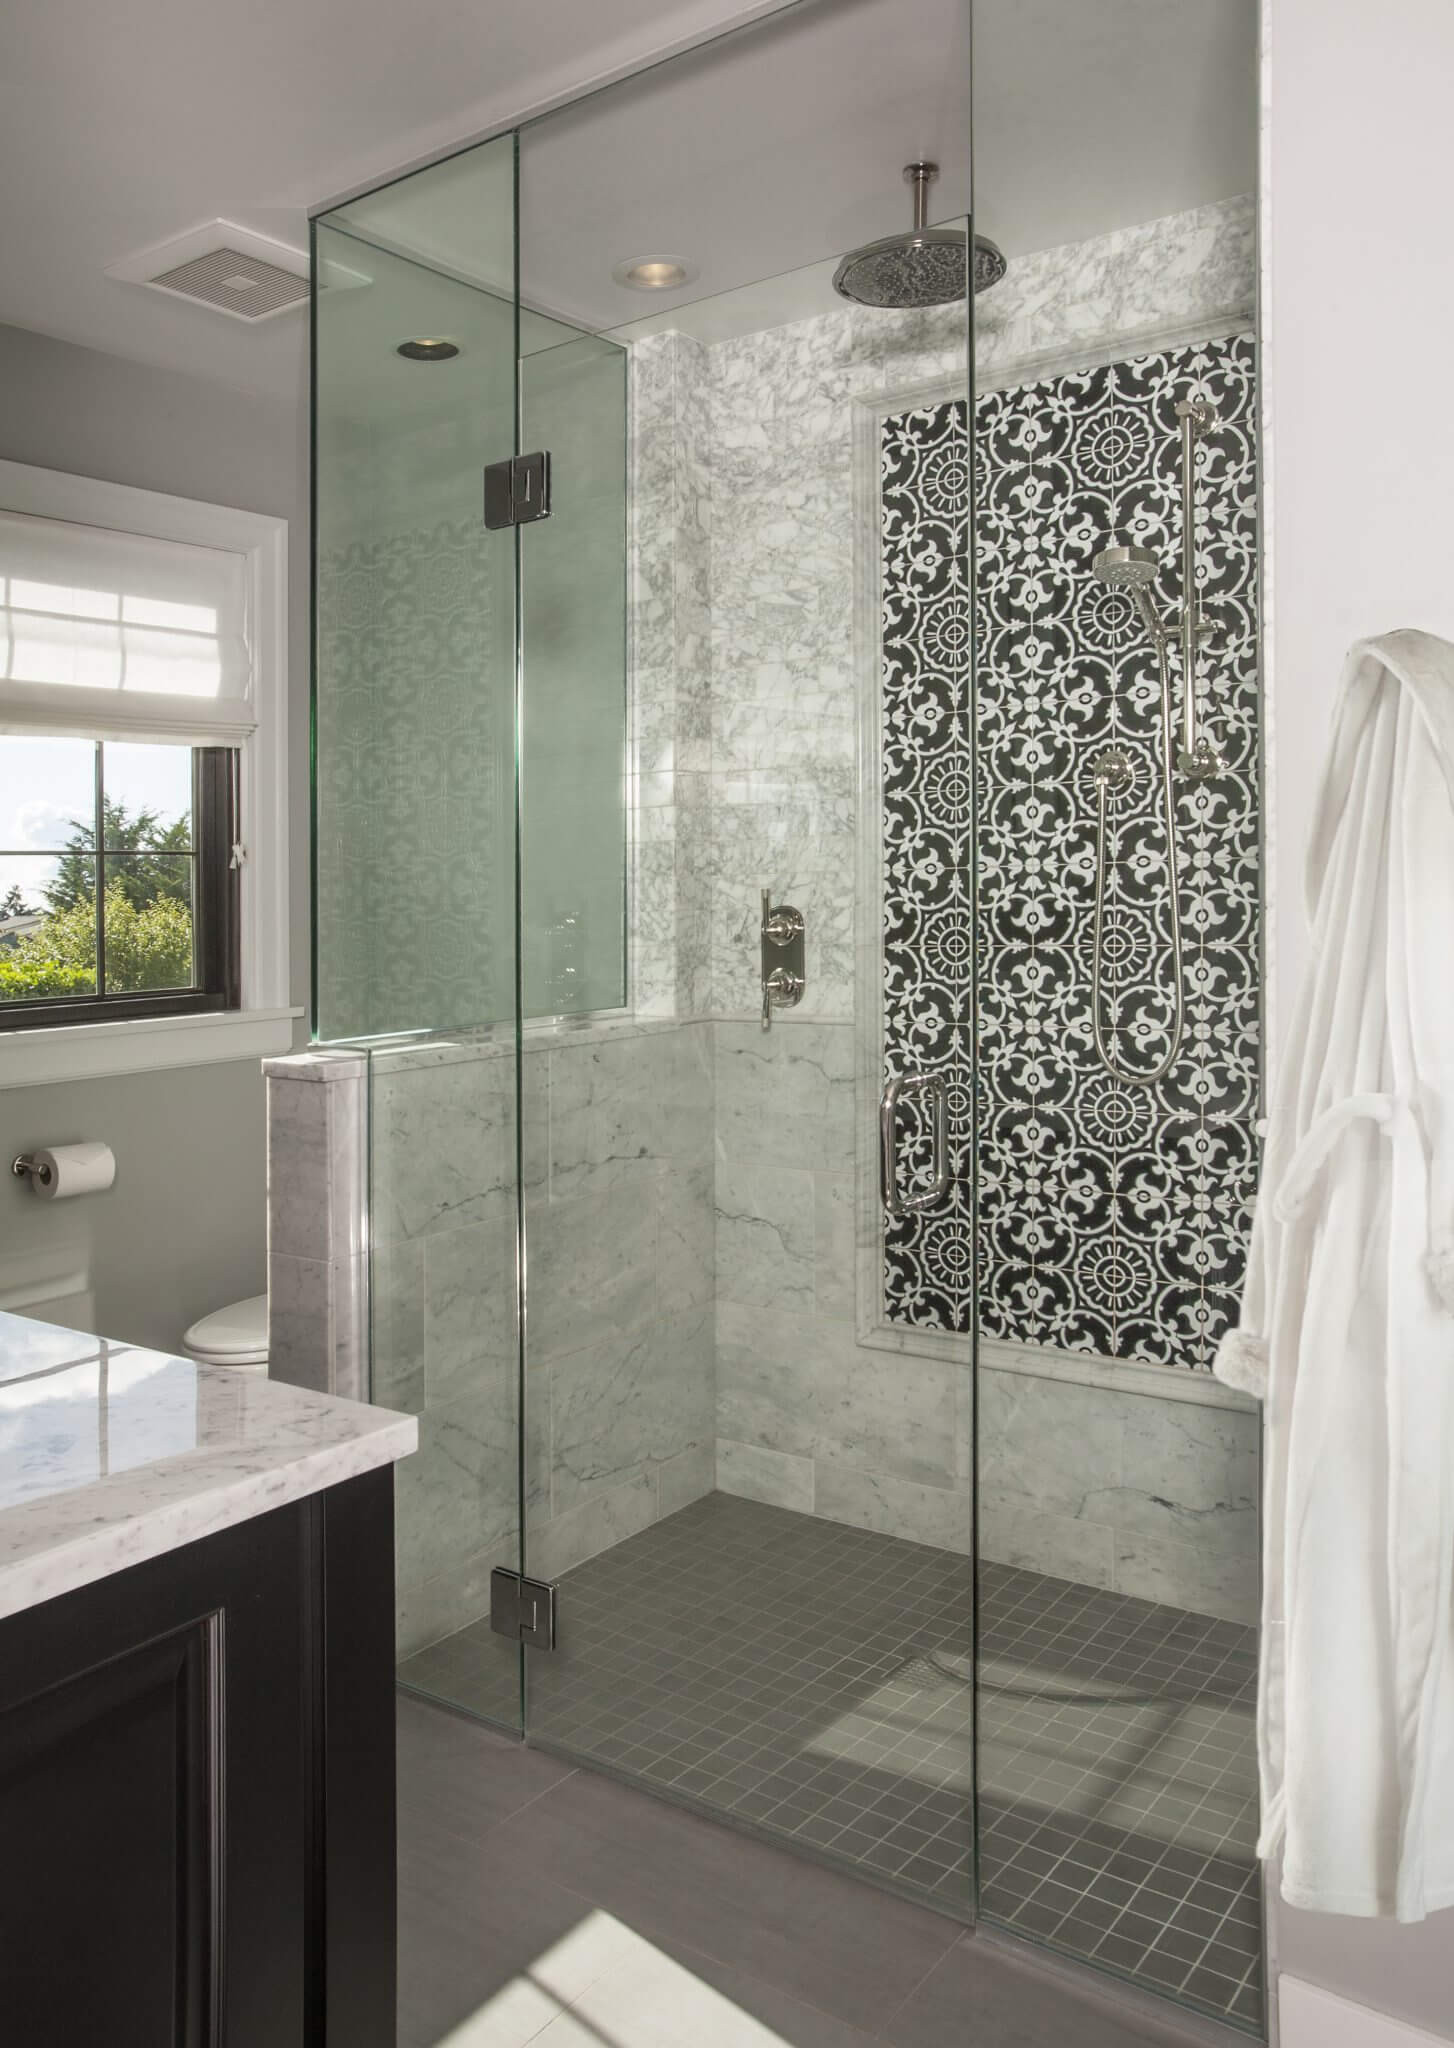 Bathroom And Shower Tile Ideas
 28 Best Bathroom Shower Tile Designs 2018 Interior